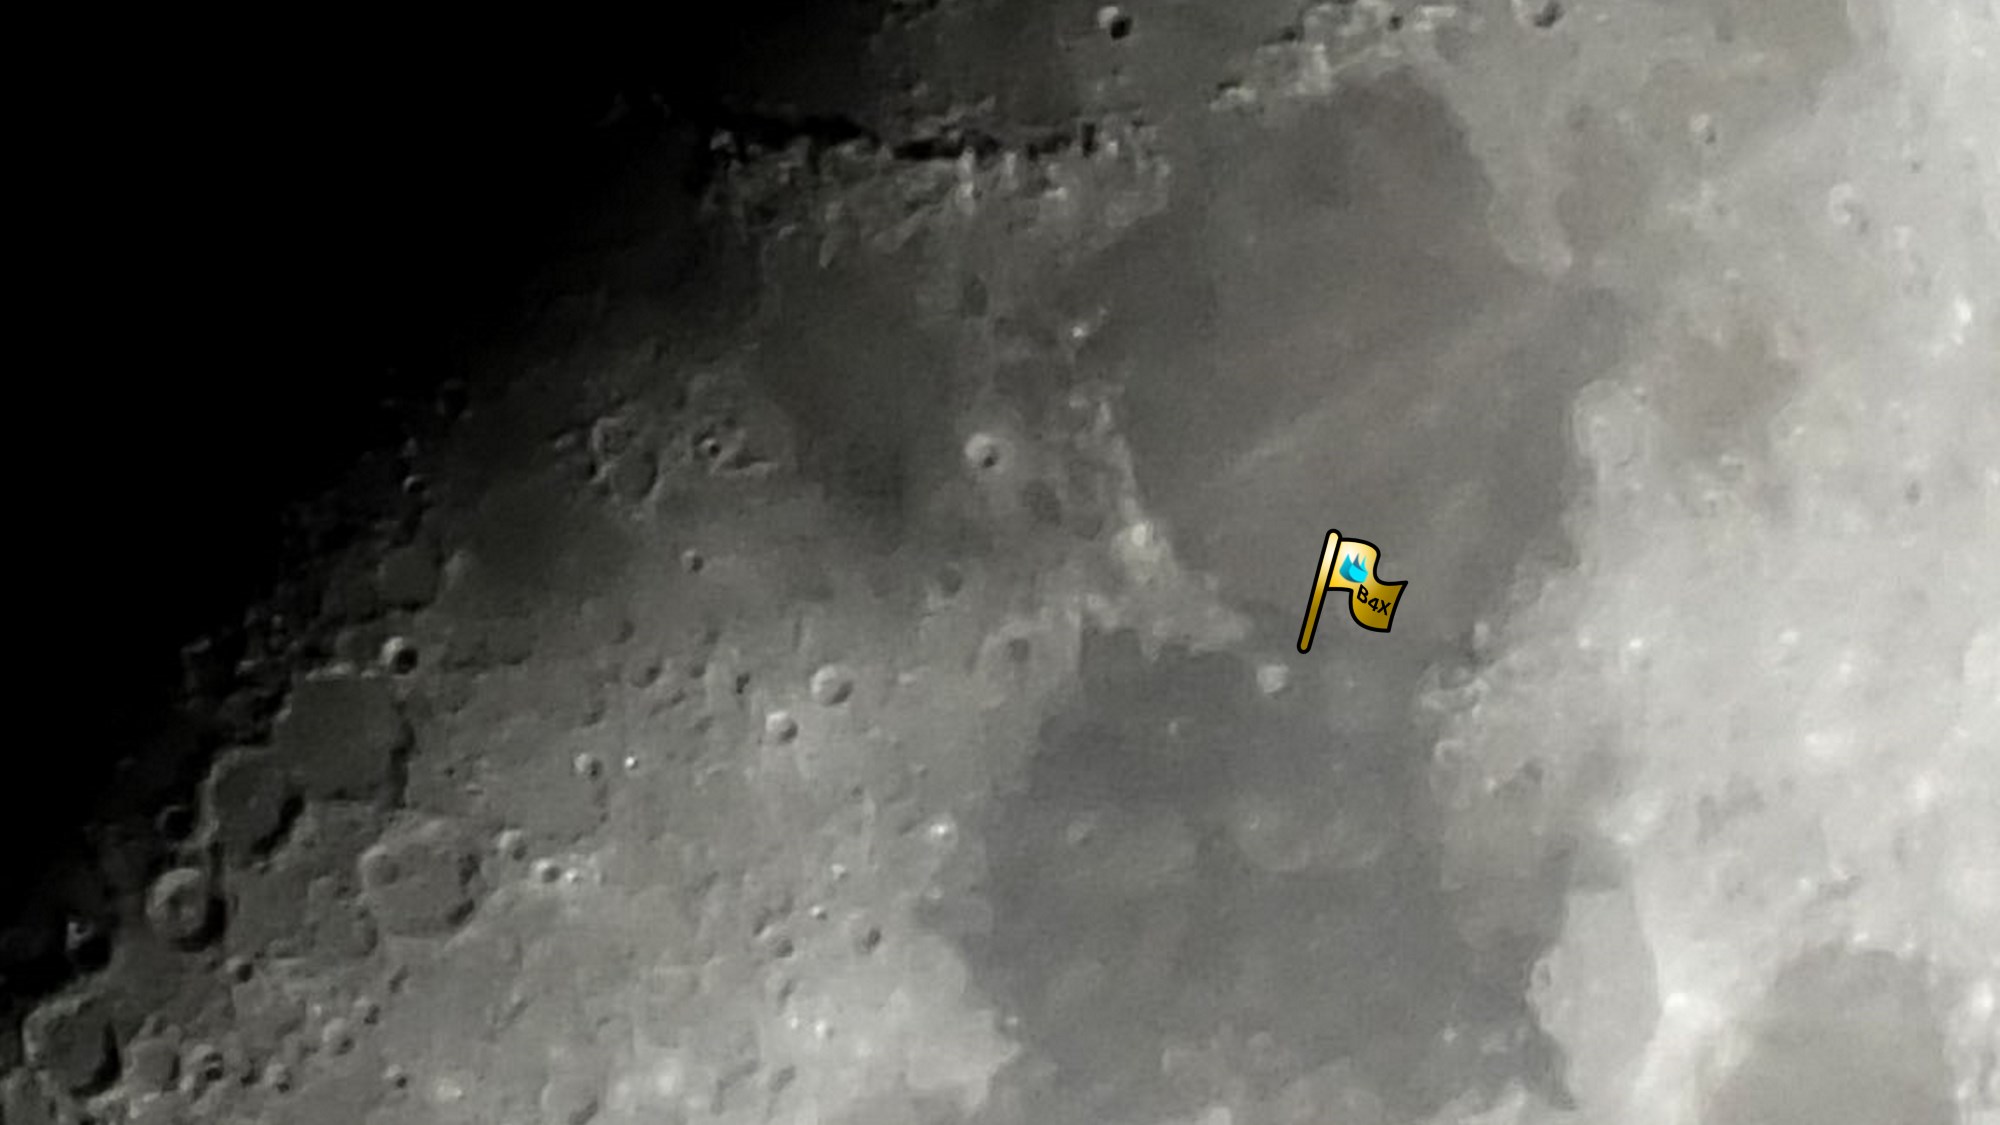 moon-3.jpg